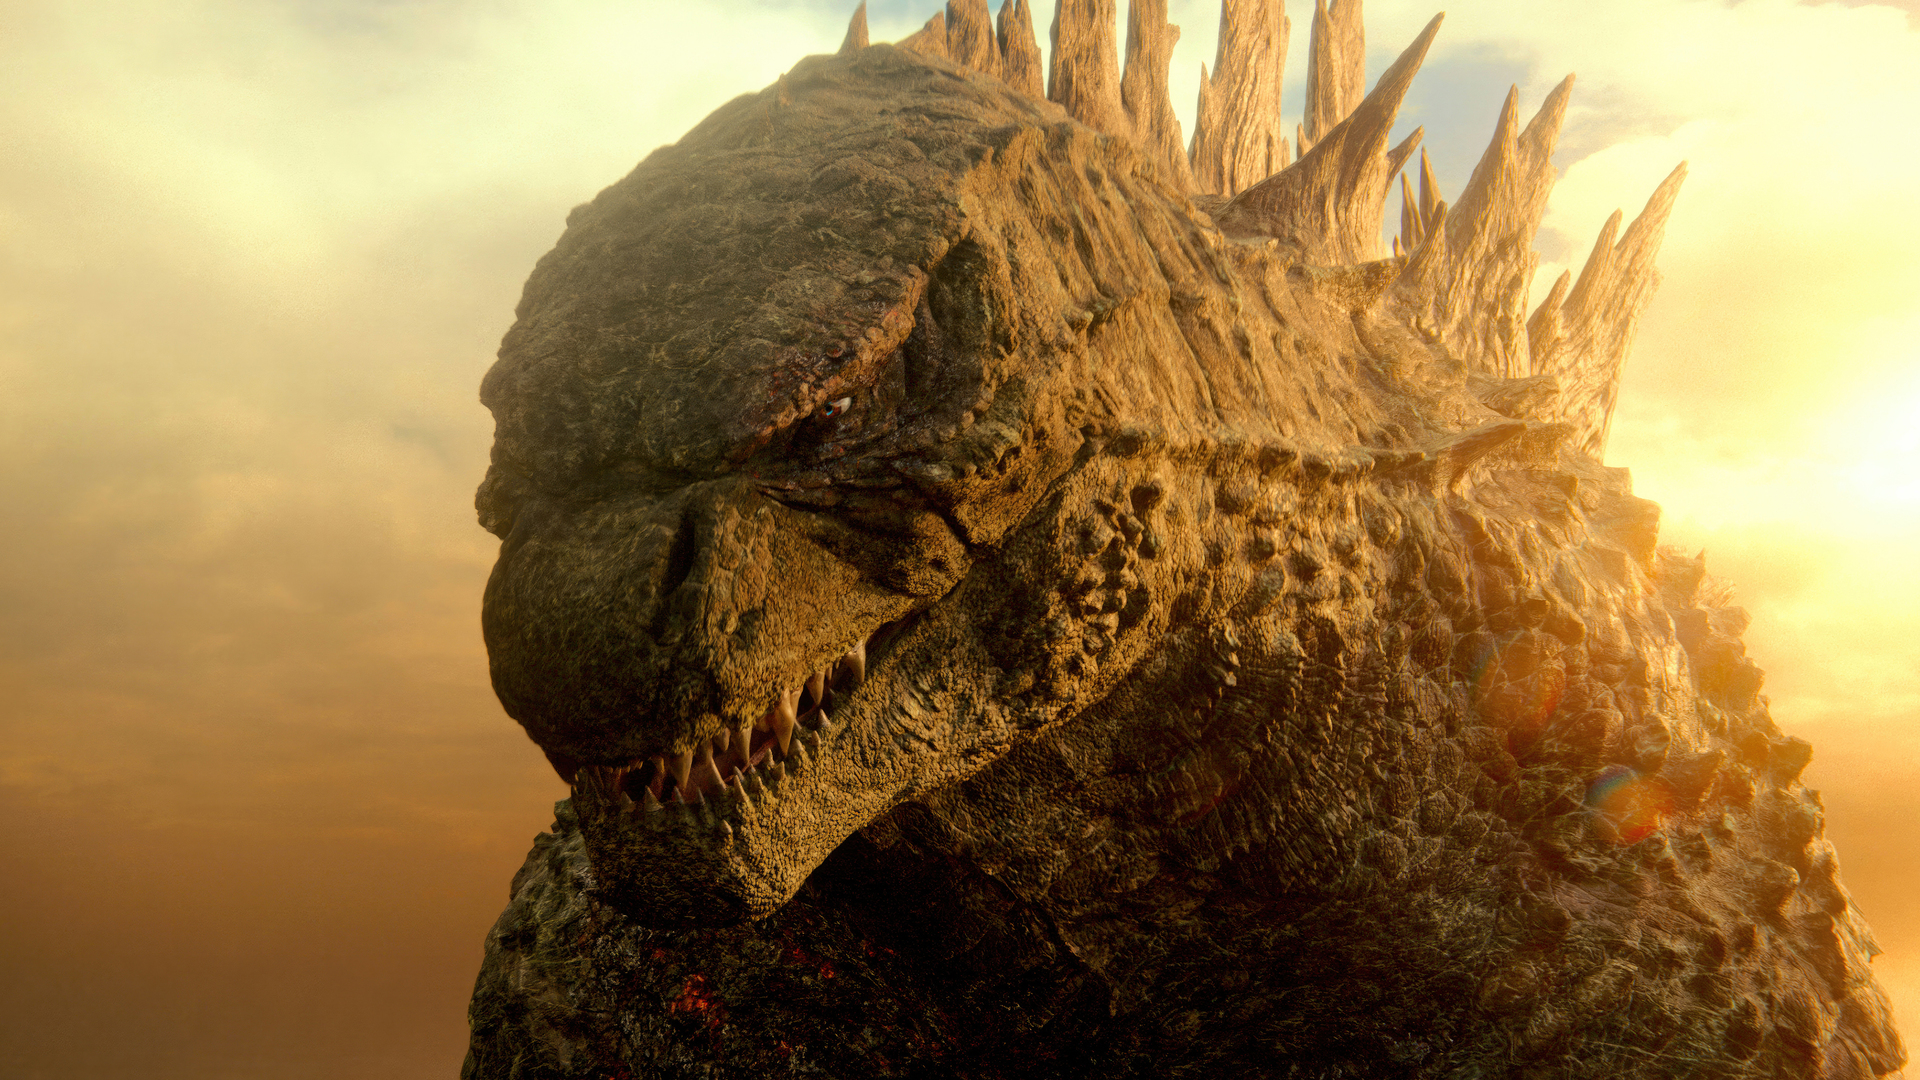 Godzilla x kong the new empire movie